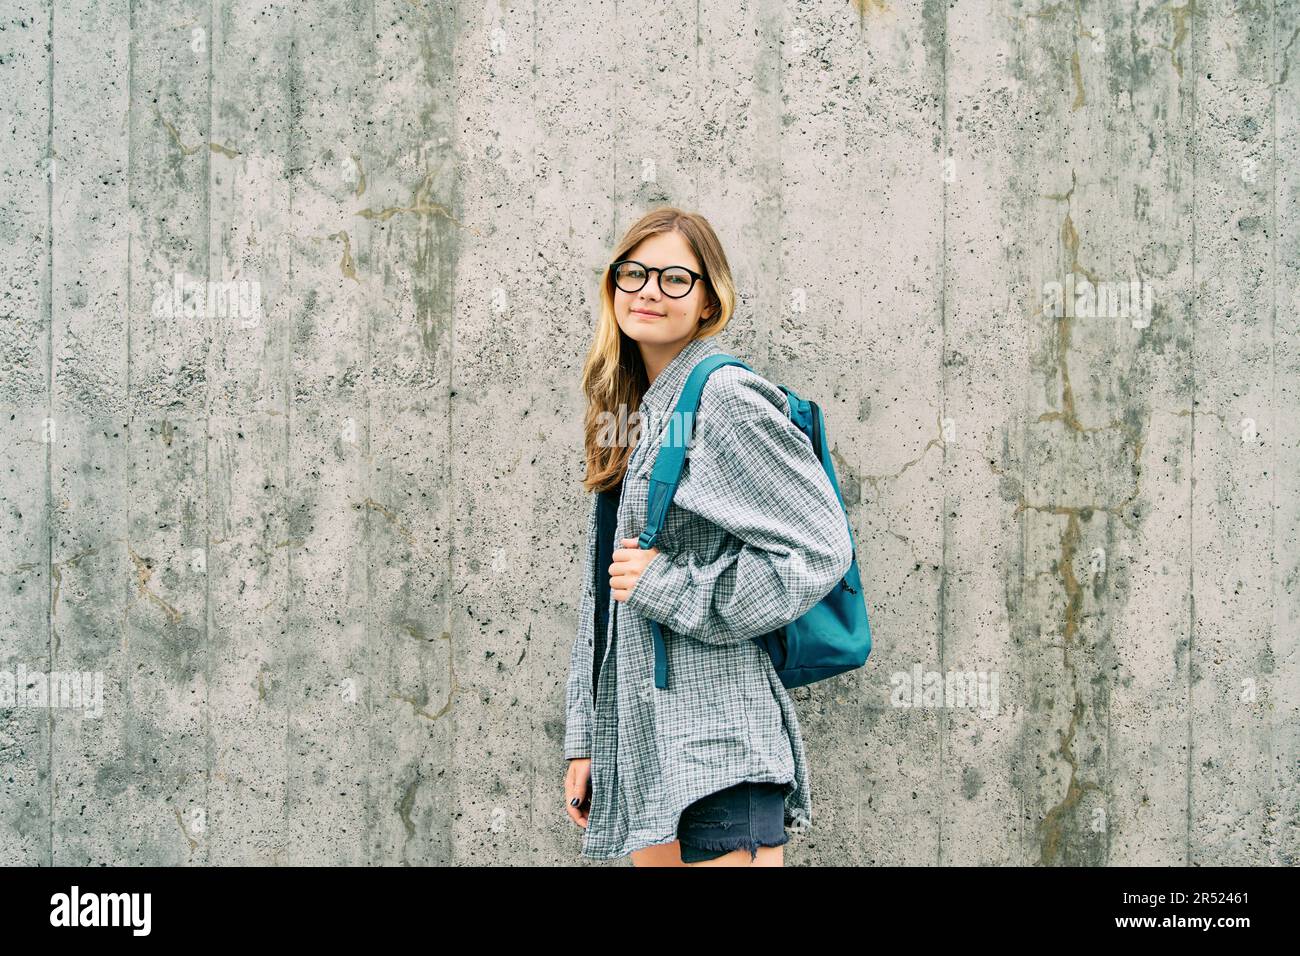 Ritratto all'aperto della giovane ragazza adolescente che indossa occhiali e zaino, posato su sfondo grigio parete Foto Stock